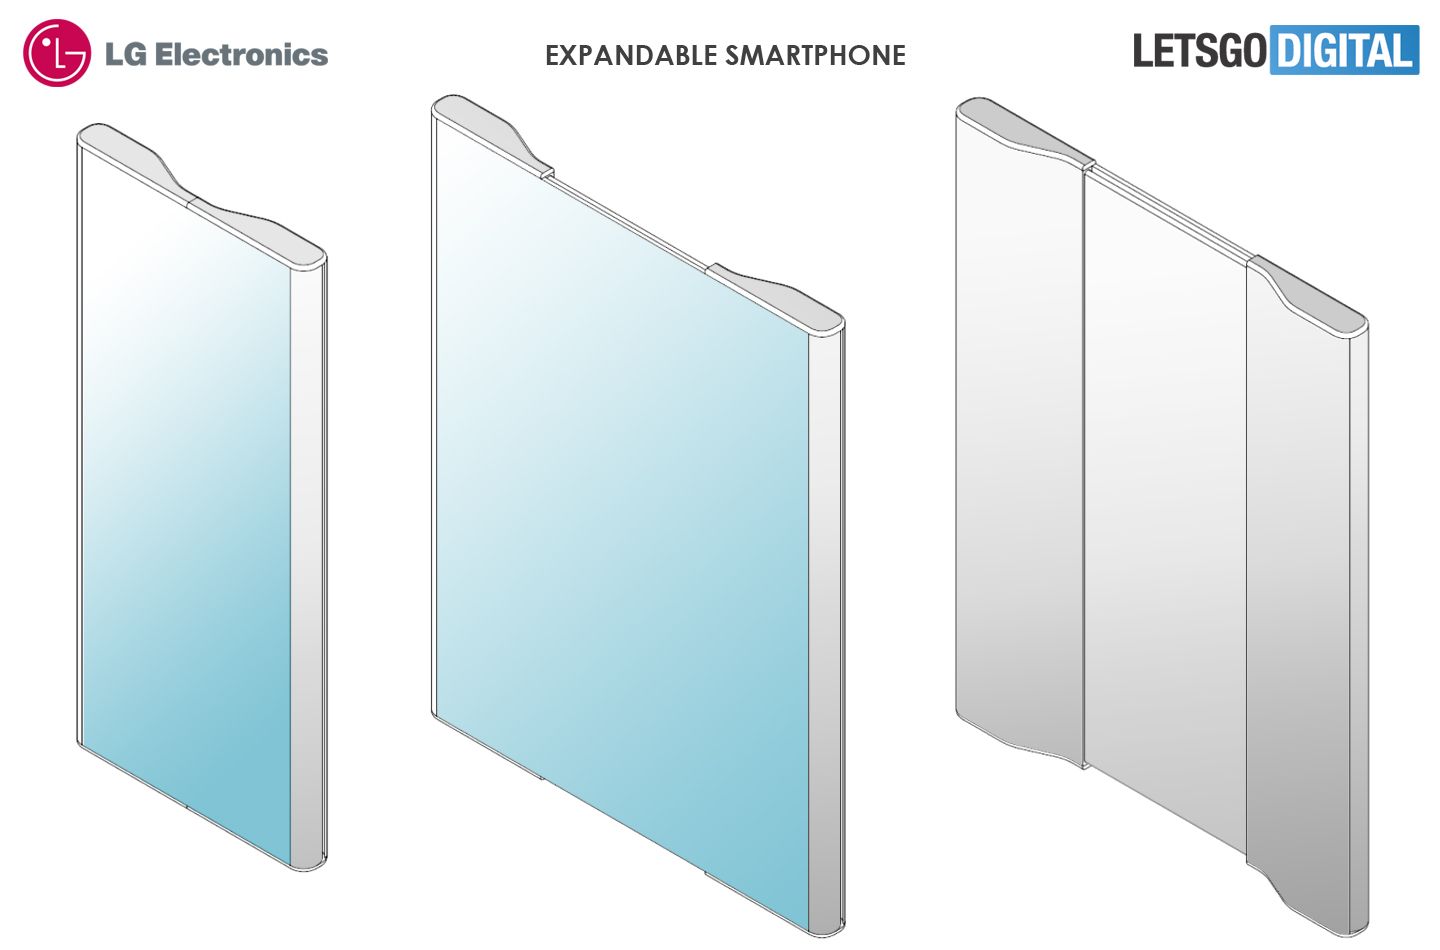 LG má vyrobiť smartfón s rozťahovacím displejom. Zväčšil by sa až dvojnásobne